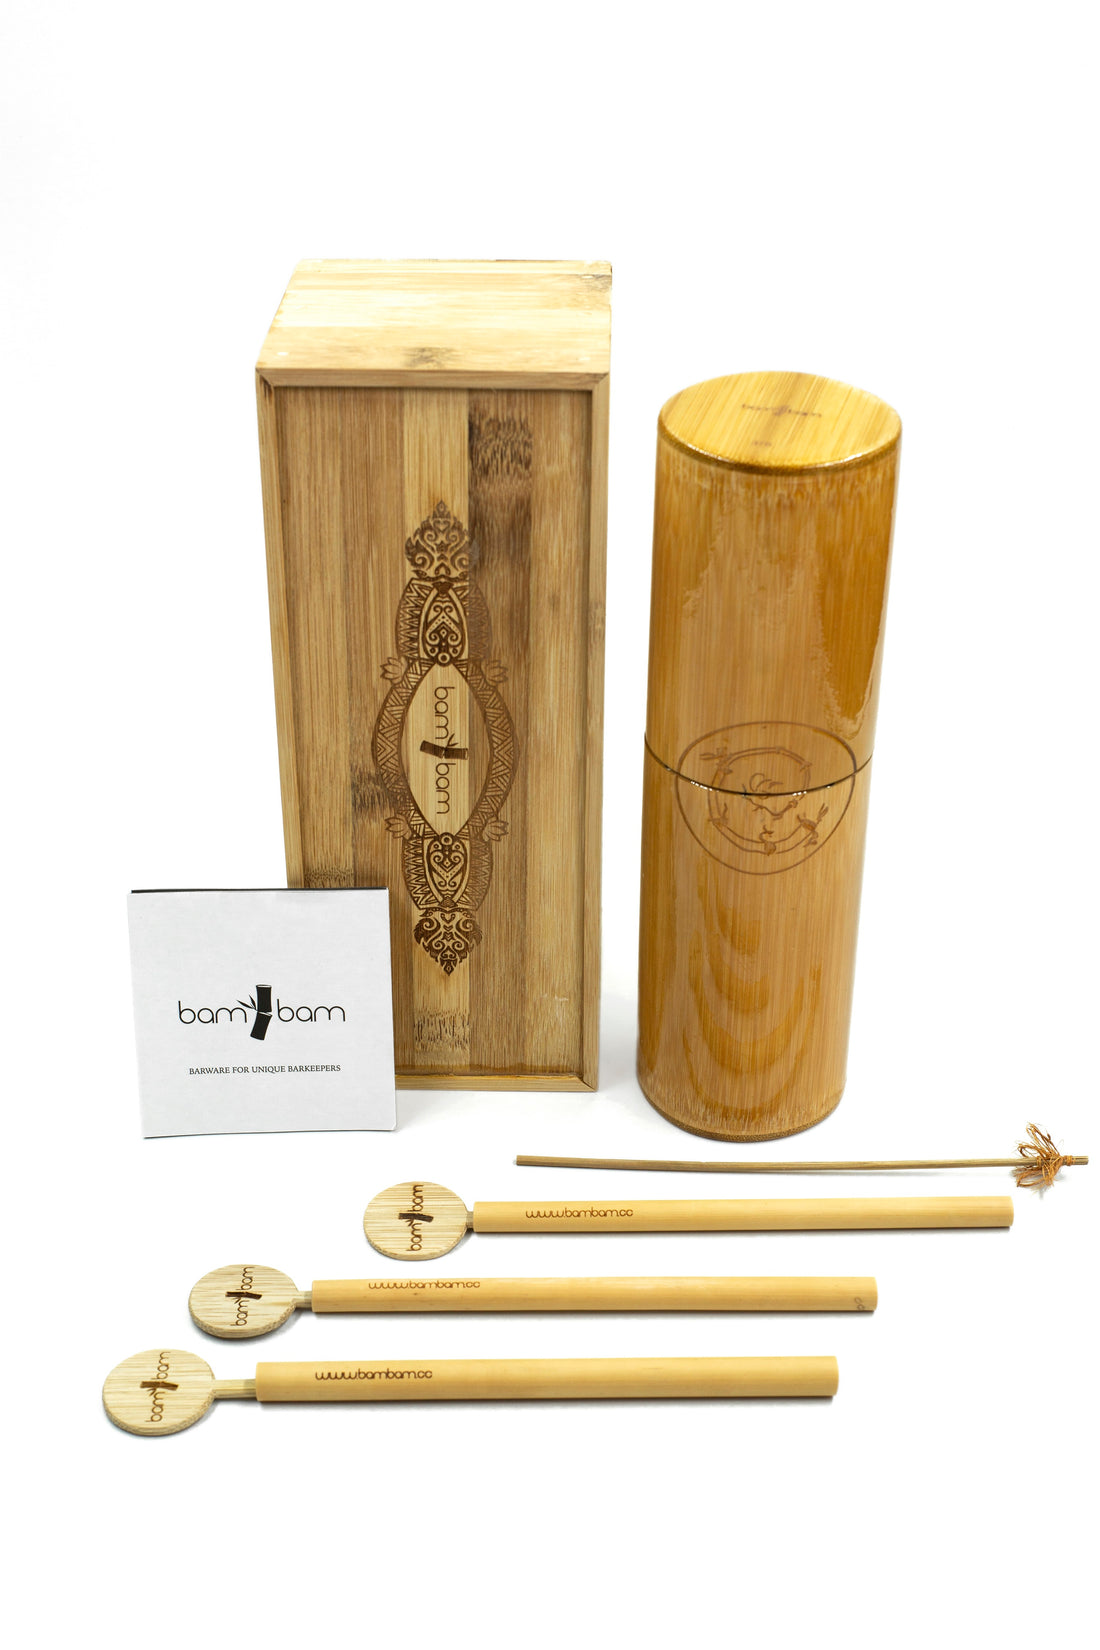 Handgefertigtes Barzubehör aus Bambus von bam bam für einzigartige und nachhaltige Bartender/ Gastronomie - WEBSHOP UMZUG!!!